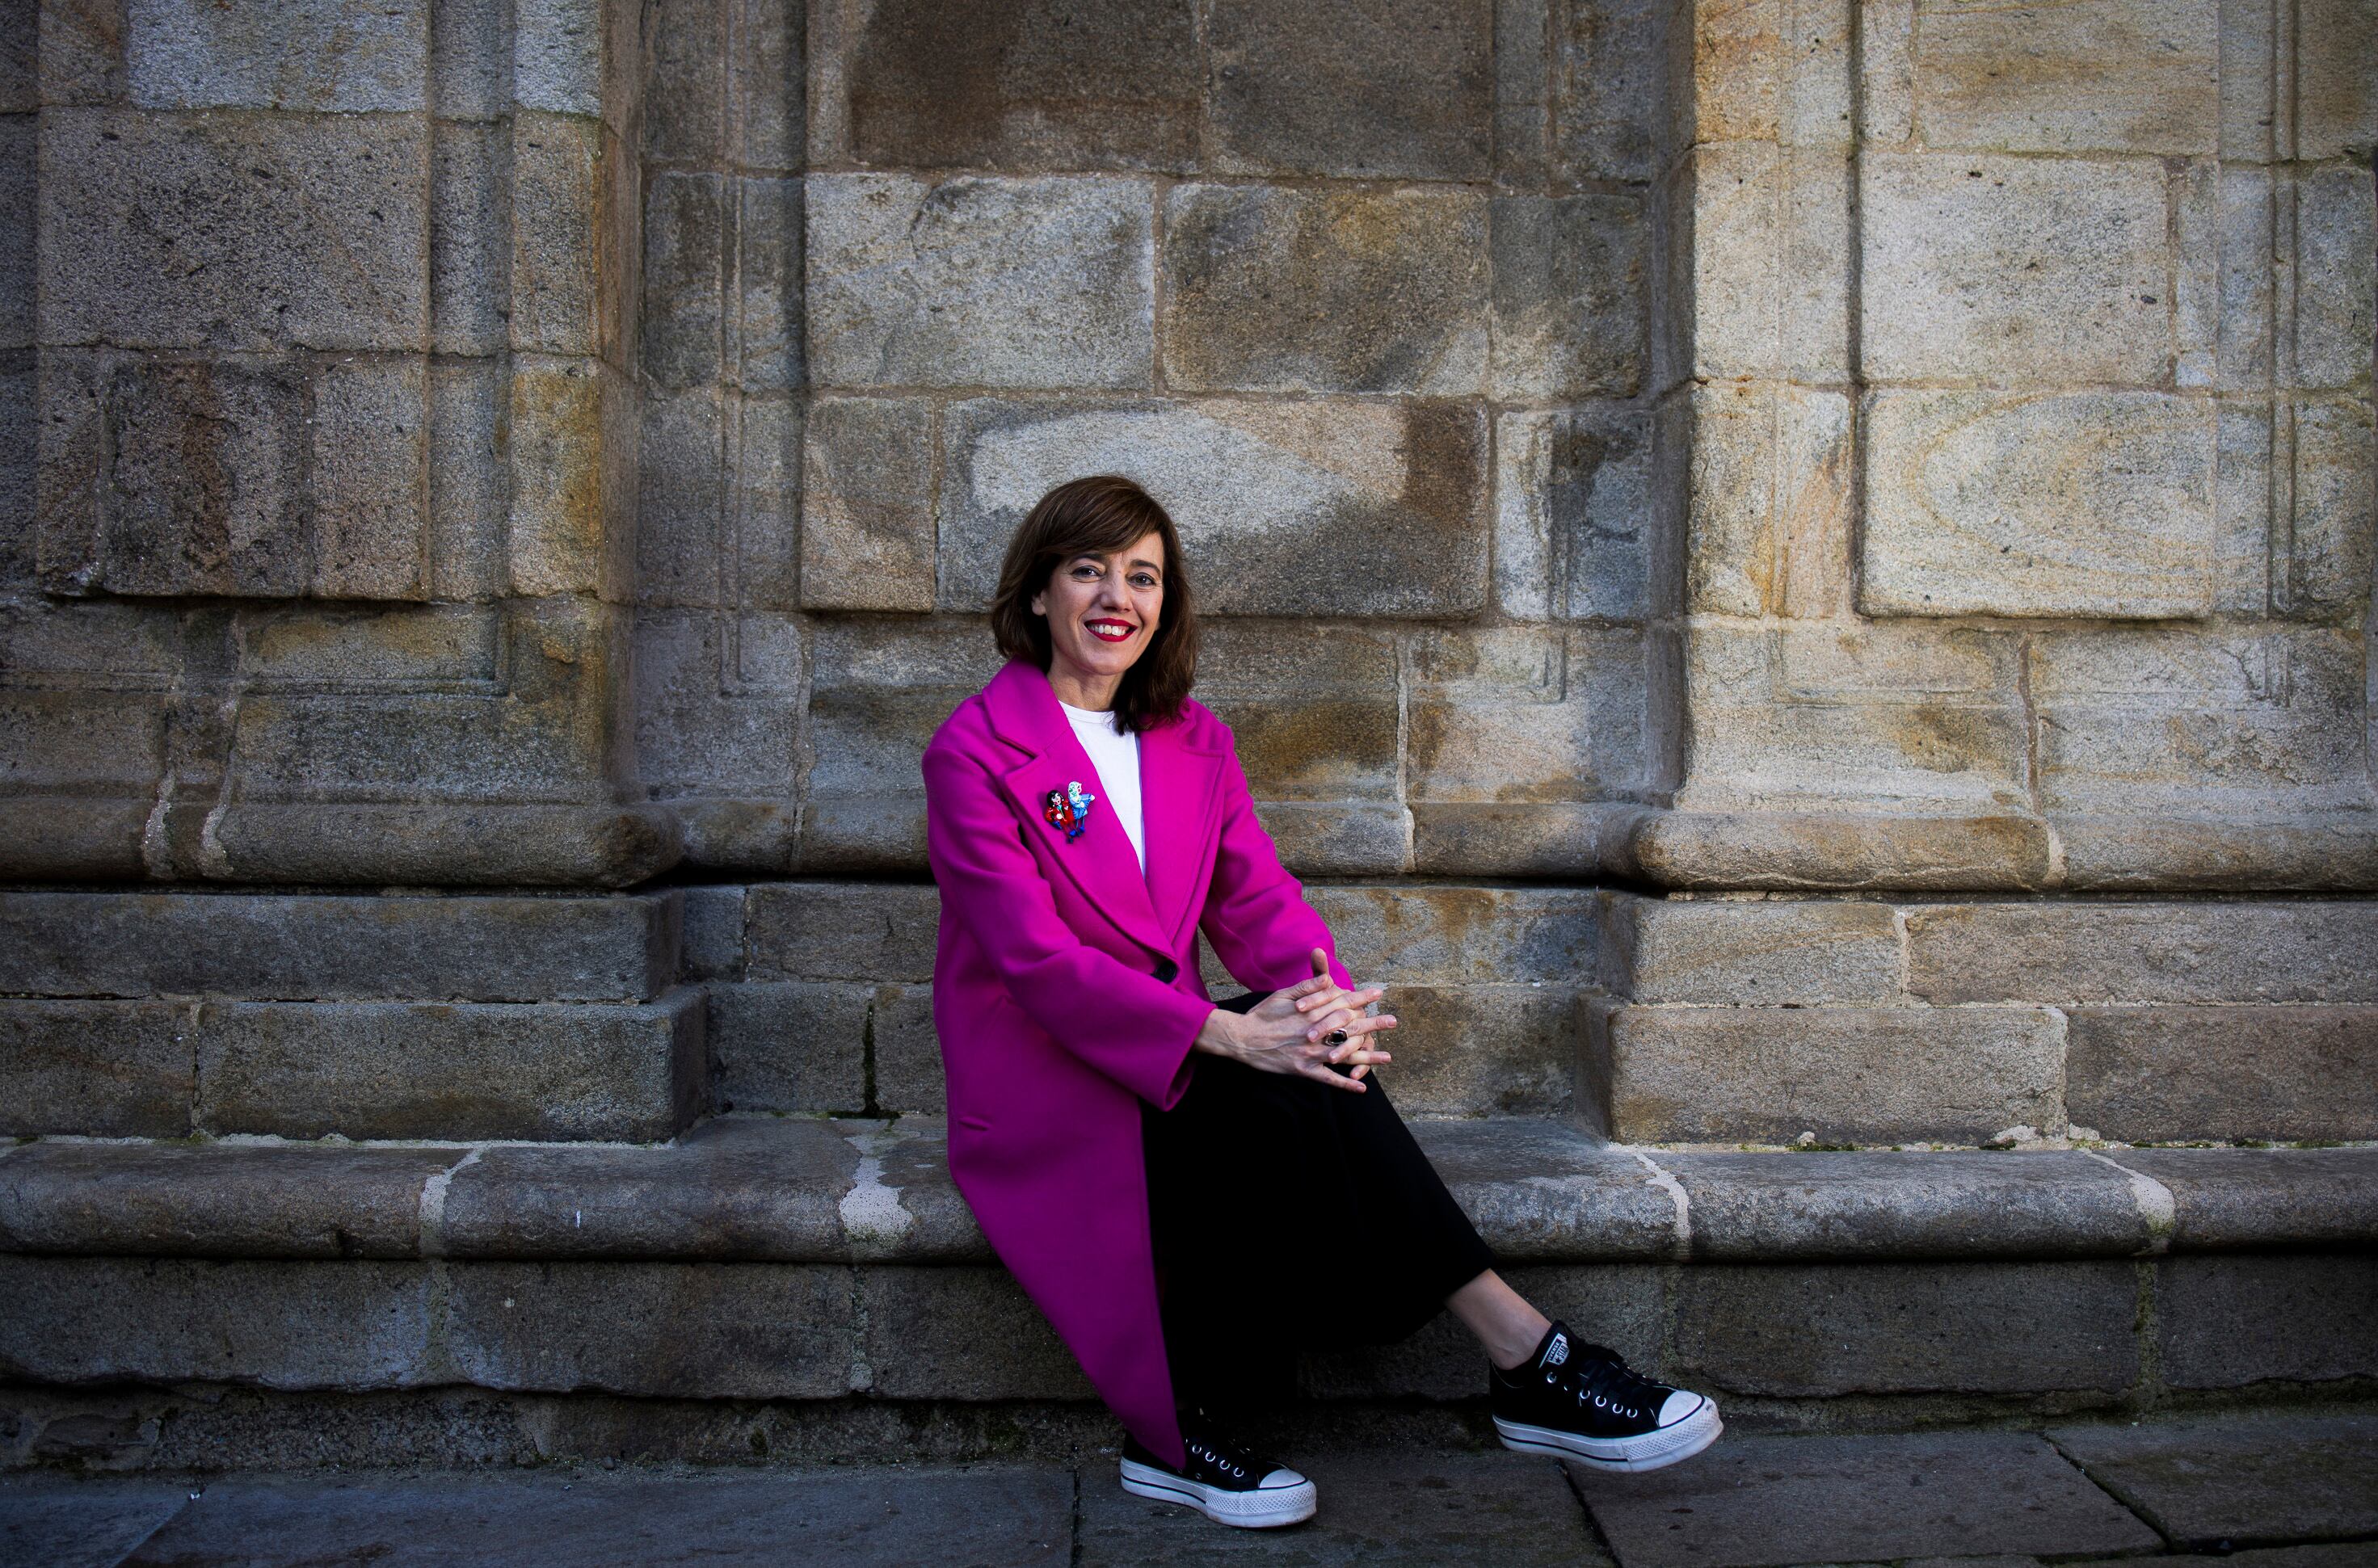  Marta Lois, candidata a la presidencia de la Xunta de Galicia por Sumar, el 4 de febrero en la plaza da Quintana, en Santiago de Compostela.